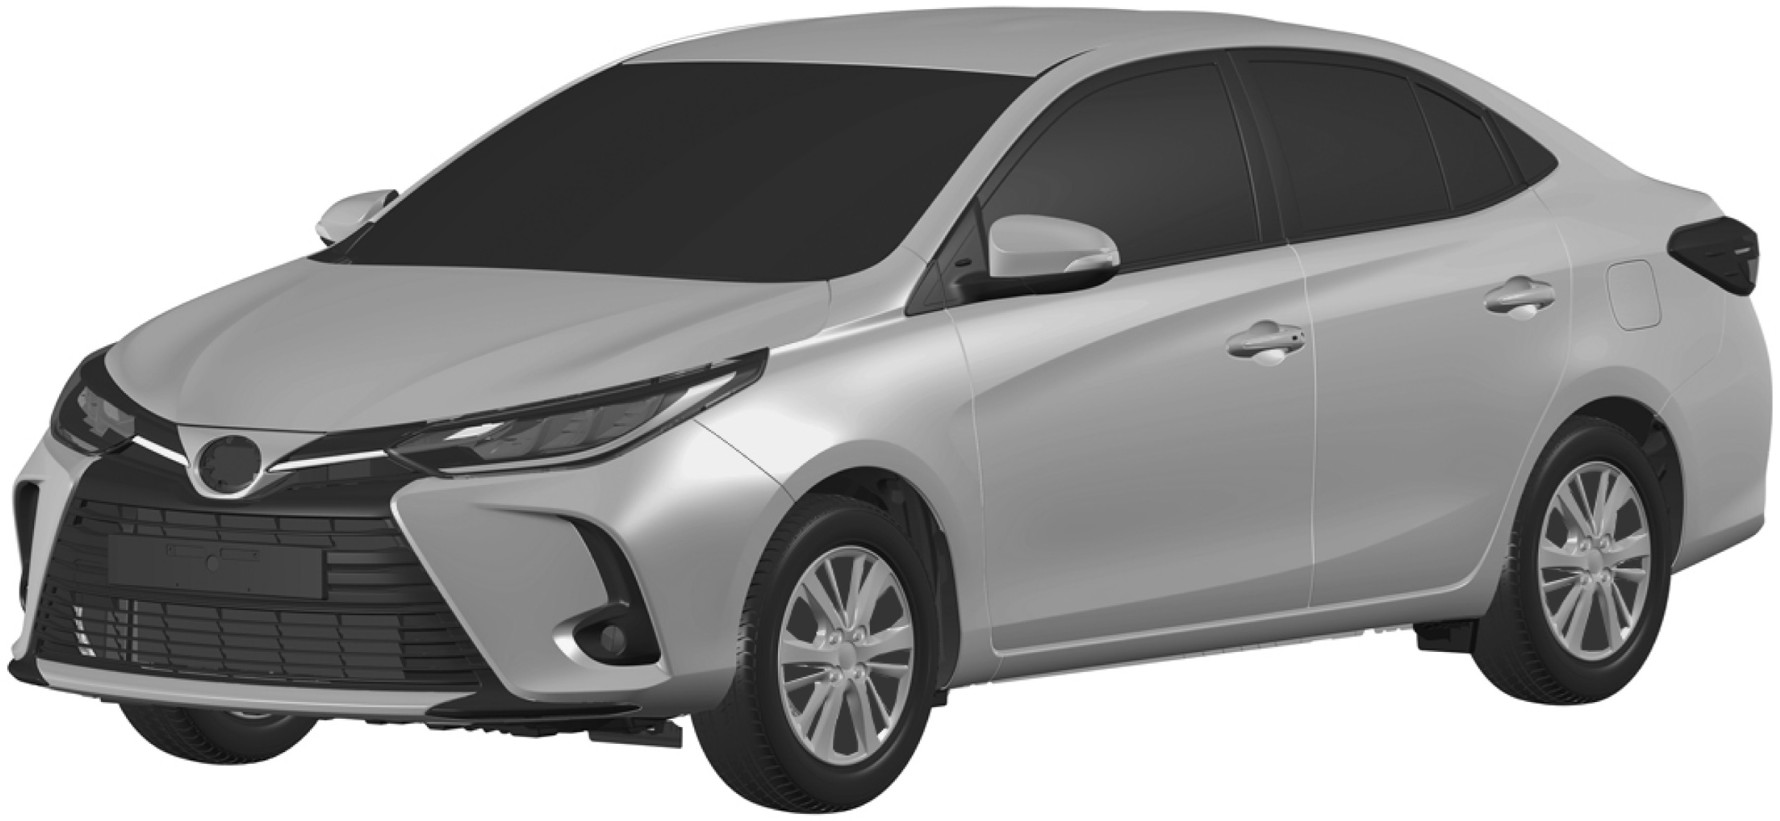 Toyota запатентовала в России бюджетный седан Vios